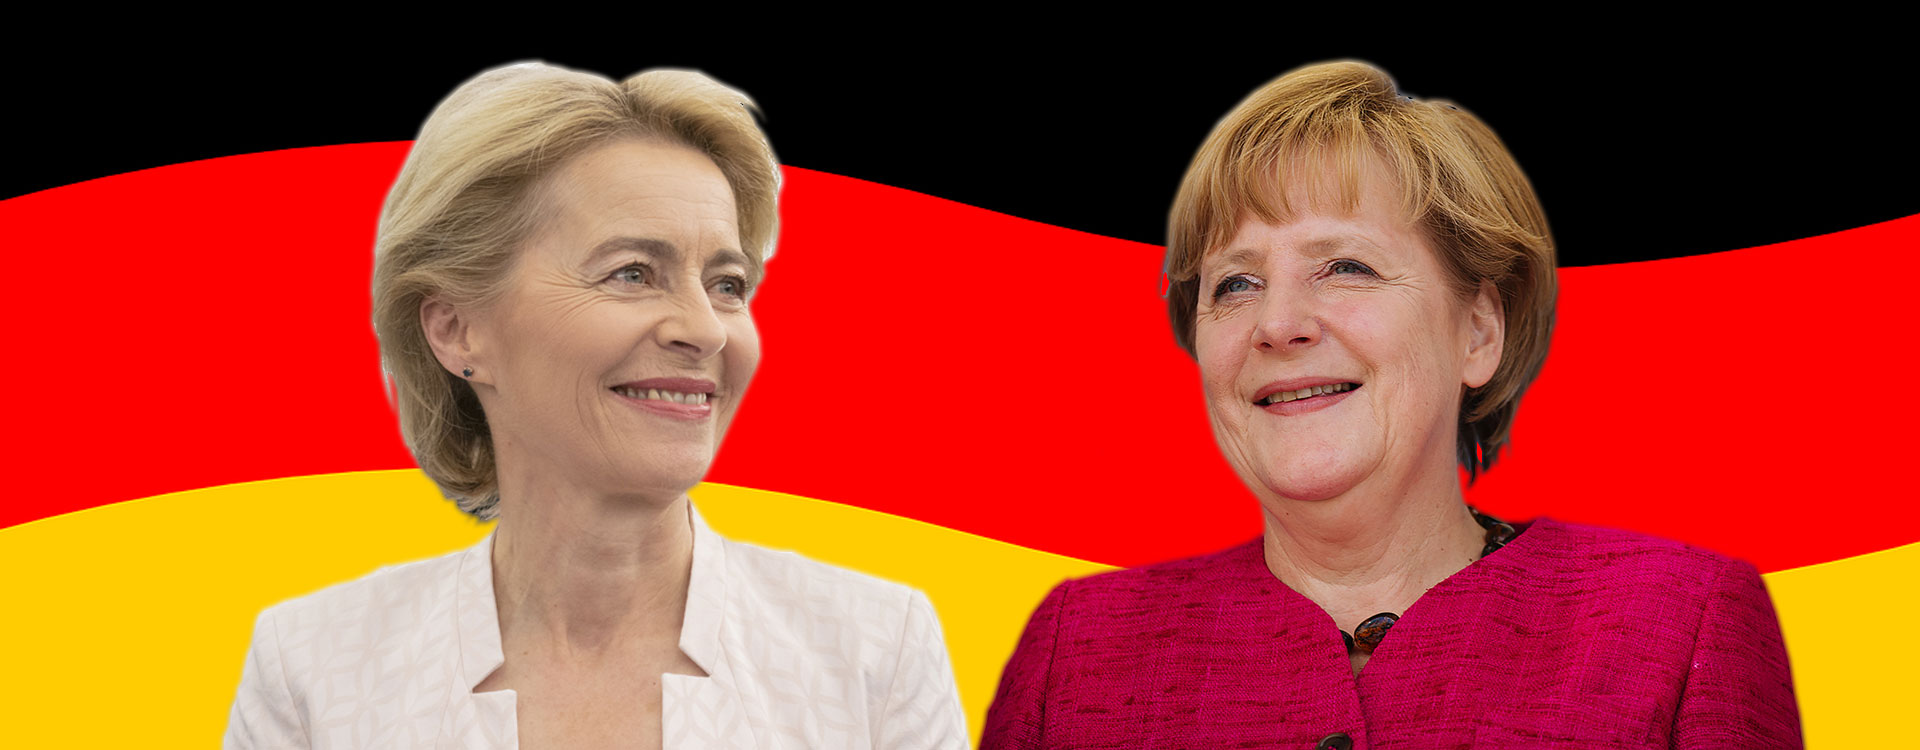 Angela Merkel and Ursula Von der Layen